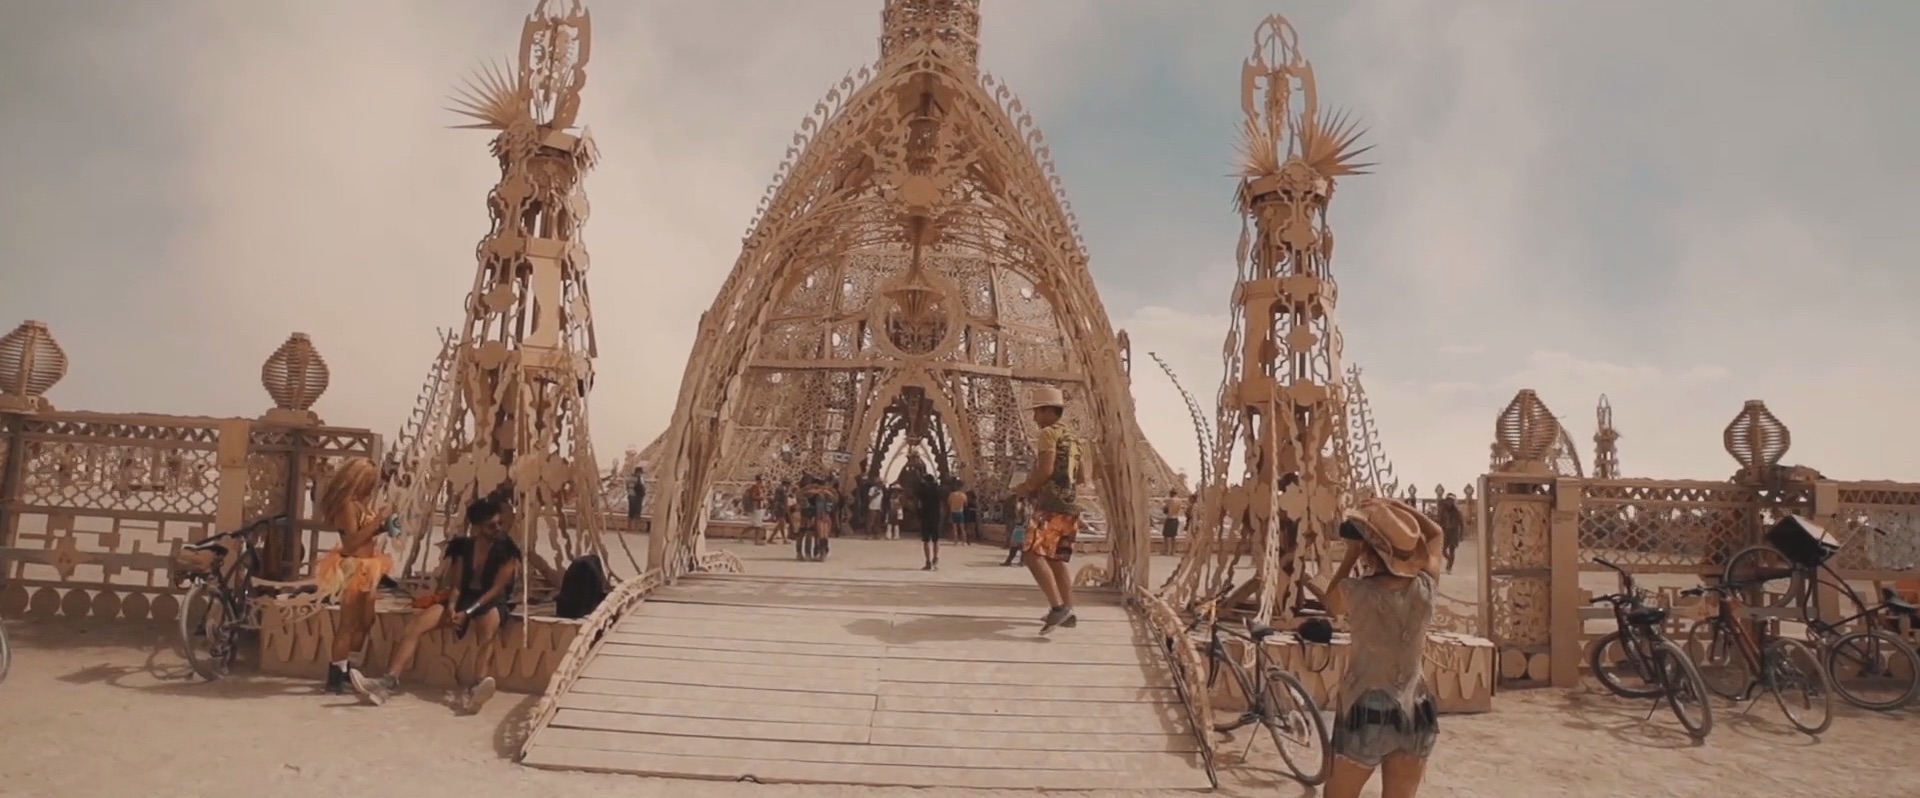 Art of Burning Man 2014_11